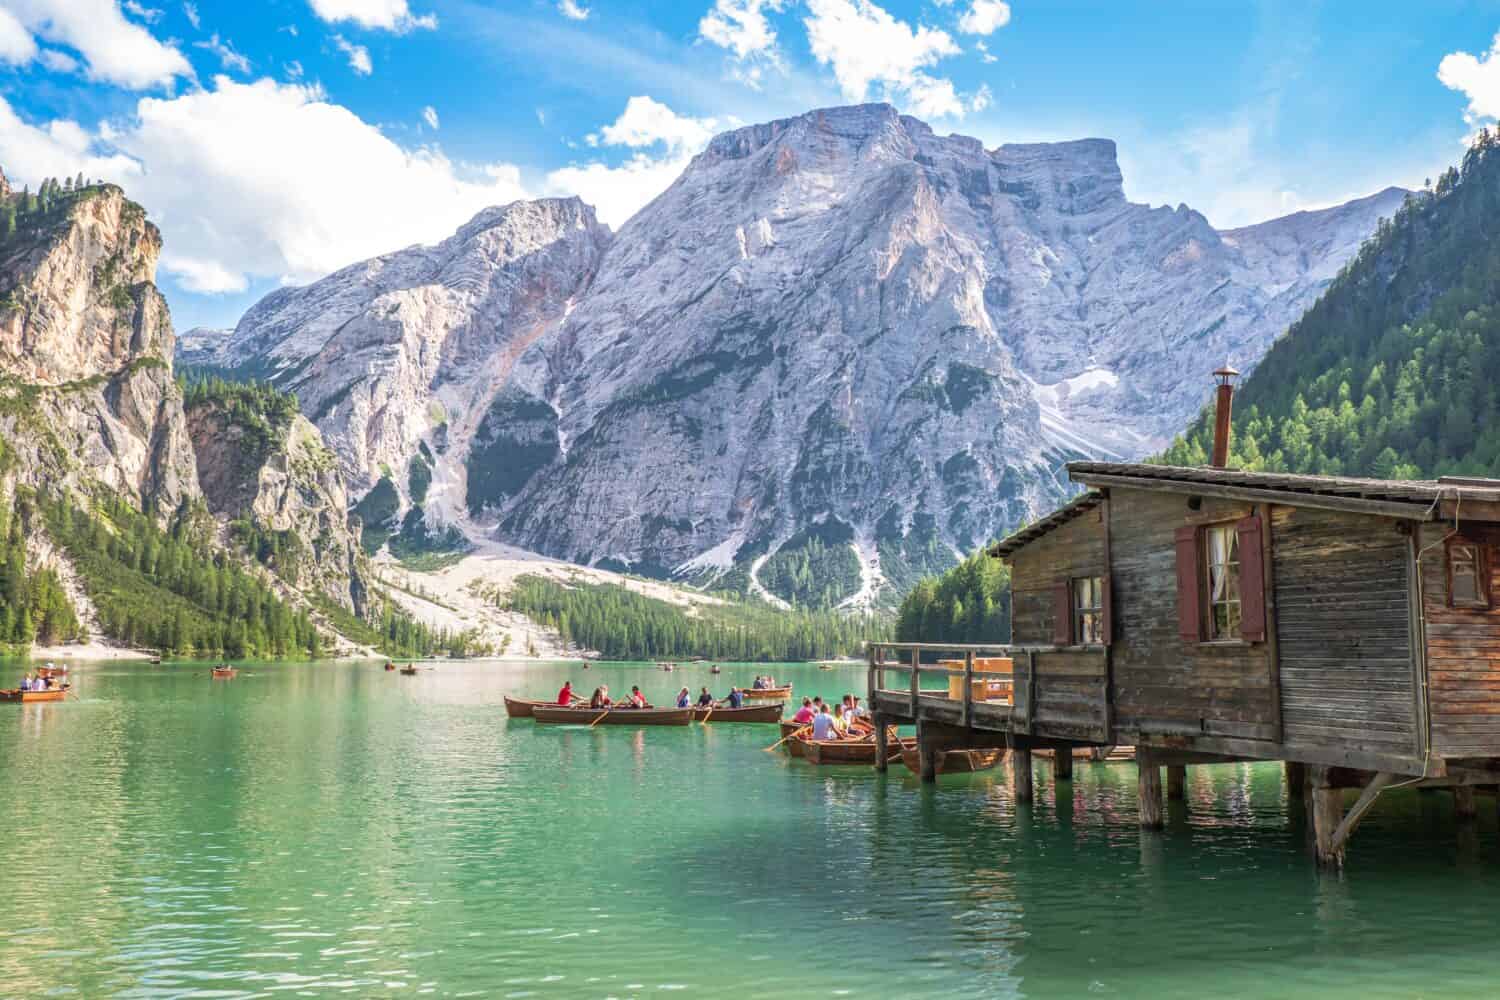 Lago di Braies (noto anche come Lago di Braies o Lago di Braies) nelle Dolomiti, Sudtirol, Italia.  Posto romantico con tipiche barche in legno sul lago alpino.  Escursionismo viaggio e avventura.